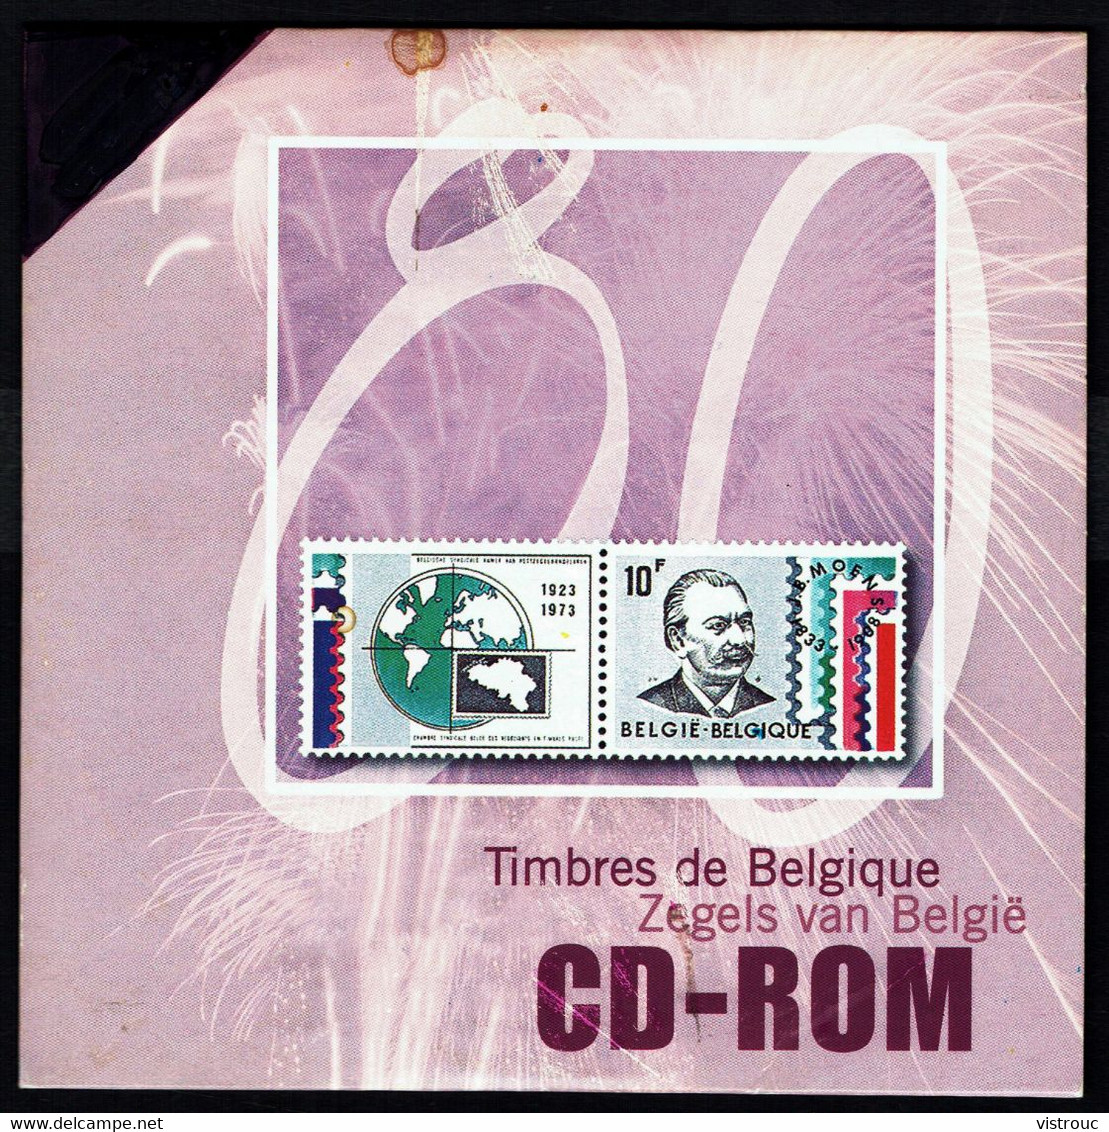 CD ROM "TIMBRES DE BELGIQUE". - Francés